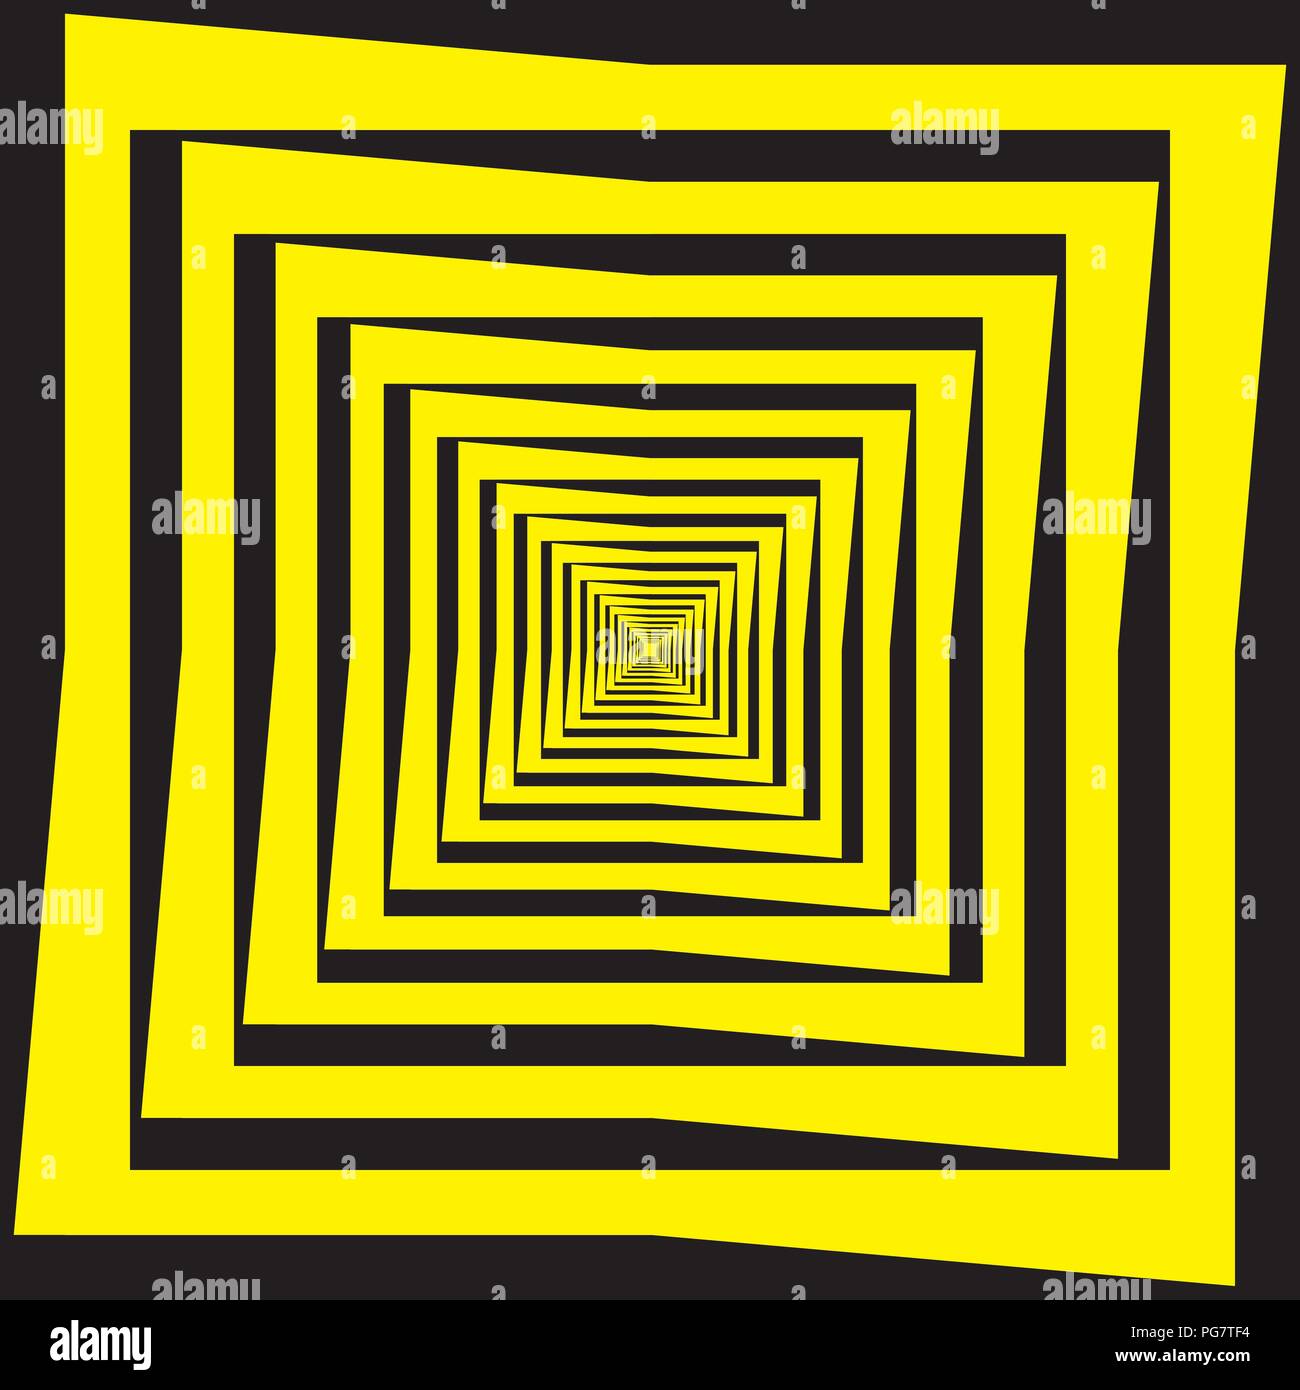 Résumé du point de vue multiple Frame transparent jaune noir fond décroissant Illustration de Vecteur